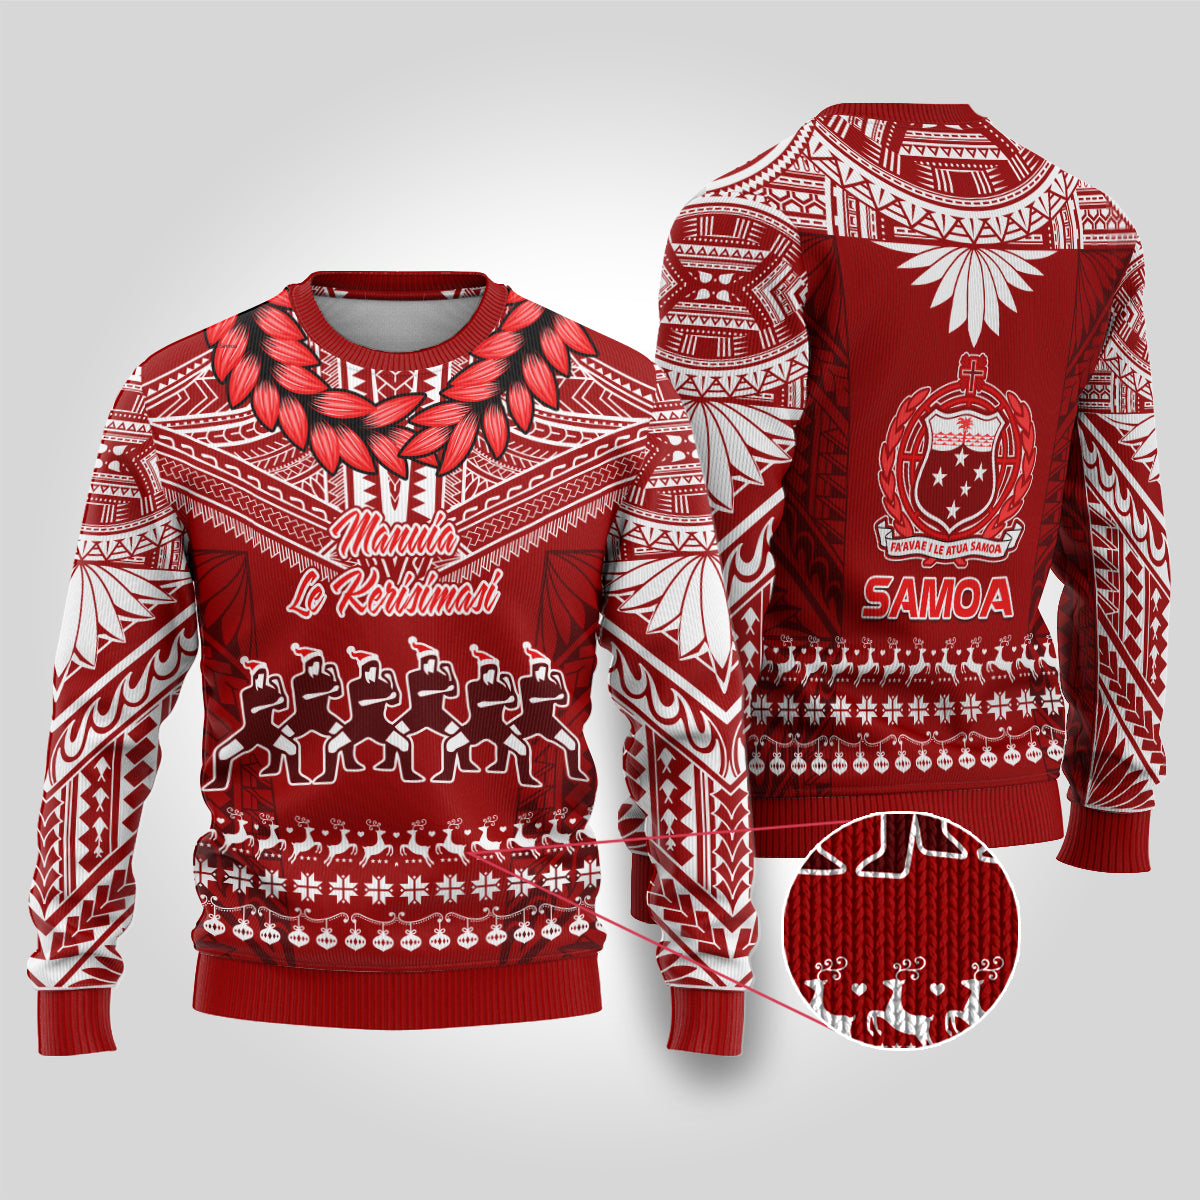 Toa Samoa Christmas Ugly Christmas Sweater Samoa Siva Tau Manuia Le Kerisimasi Red Vibe LT9 Red - Polynesian Pride